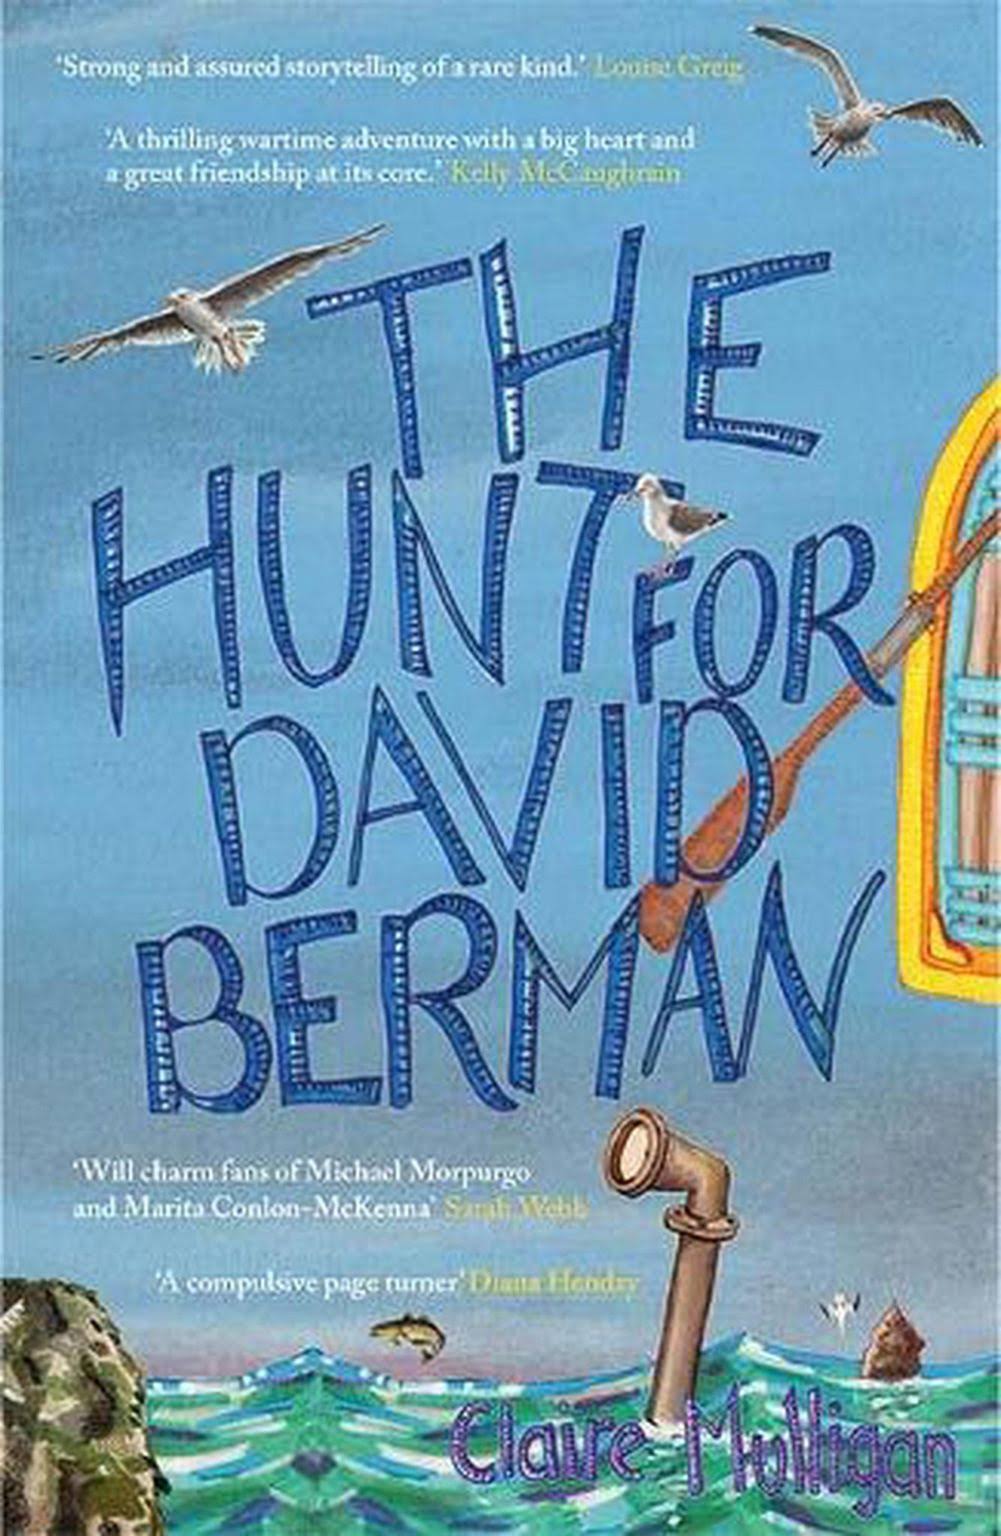 The Hunt for David Berman [Book]